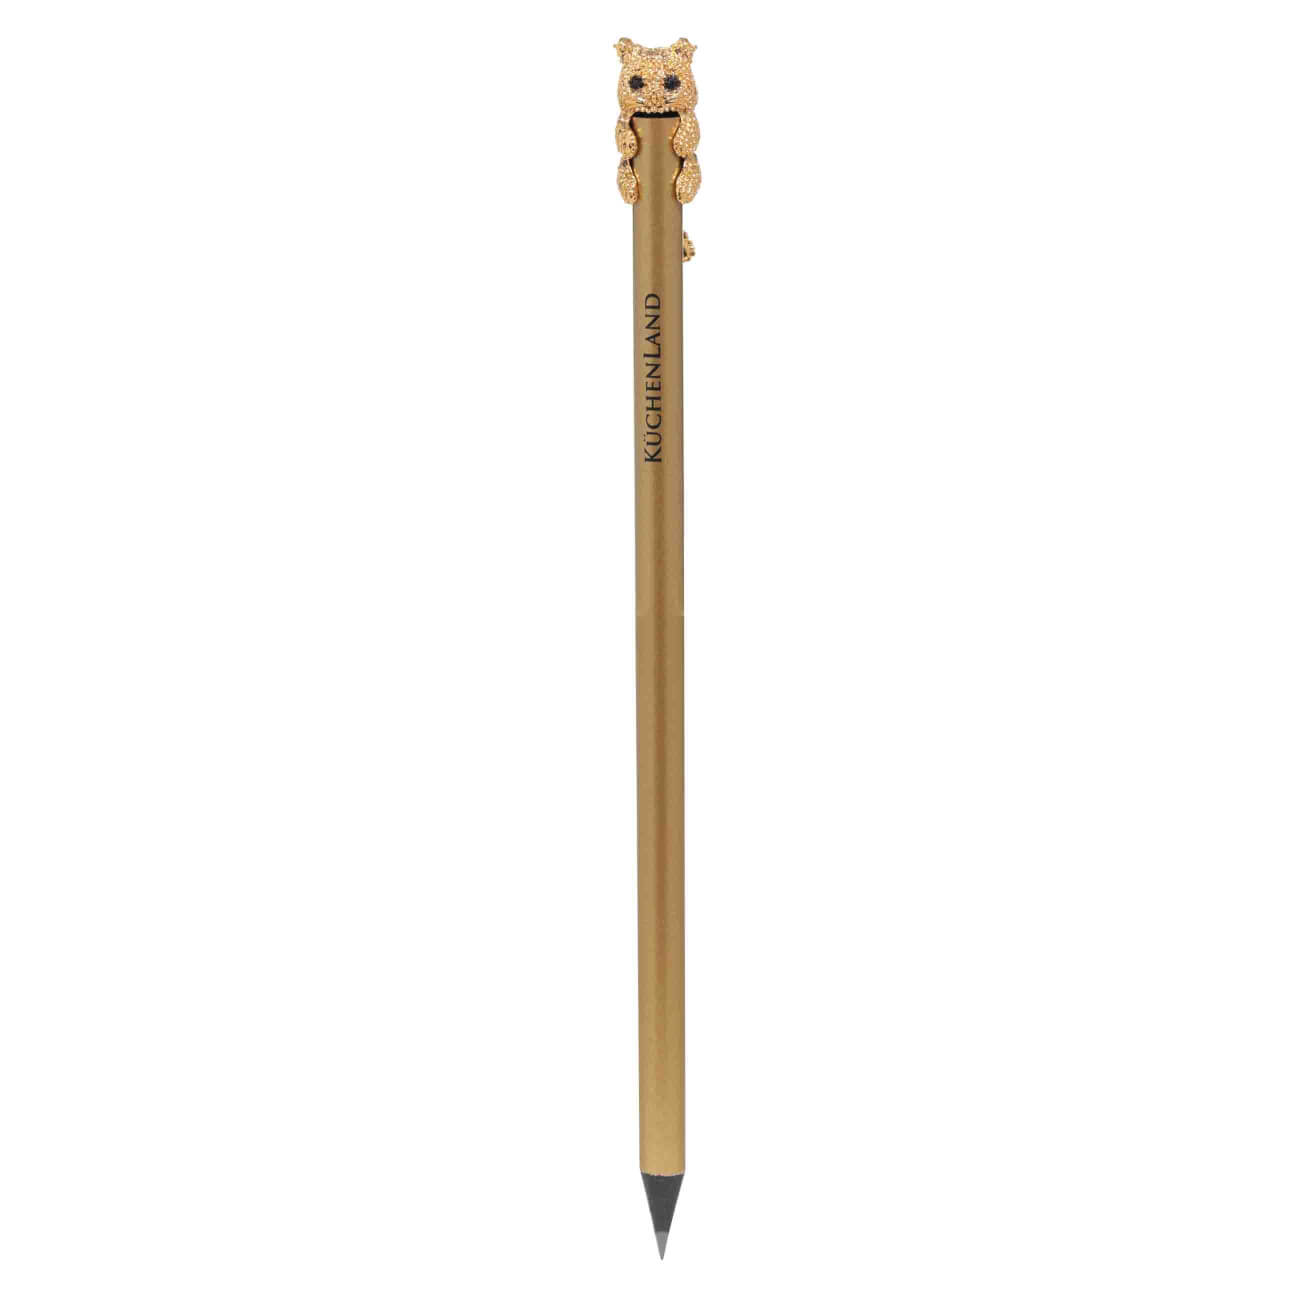 Карандаш, 18 см, чернографитный, с фигуркой, золотистый, Кот, Draw карандаш чернографитный stabilo easygraph для левшей hв